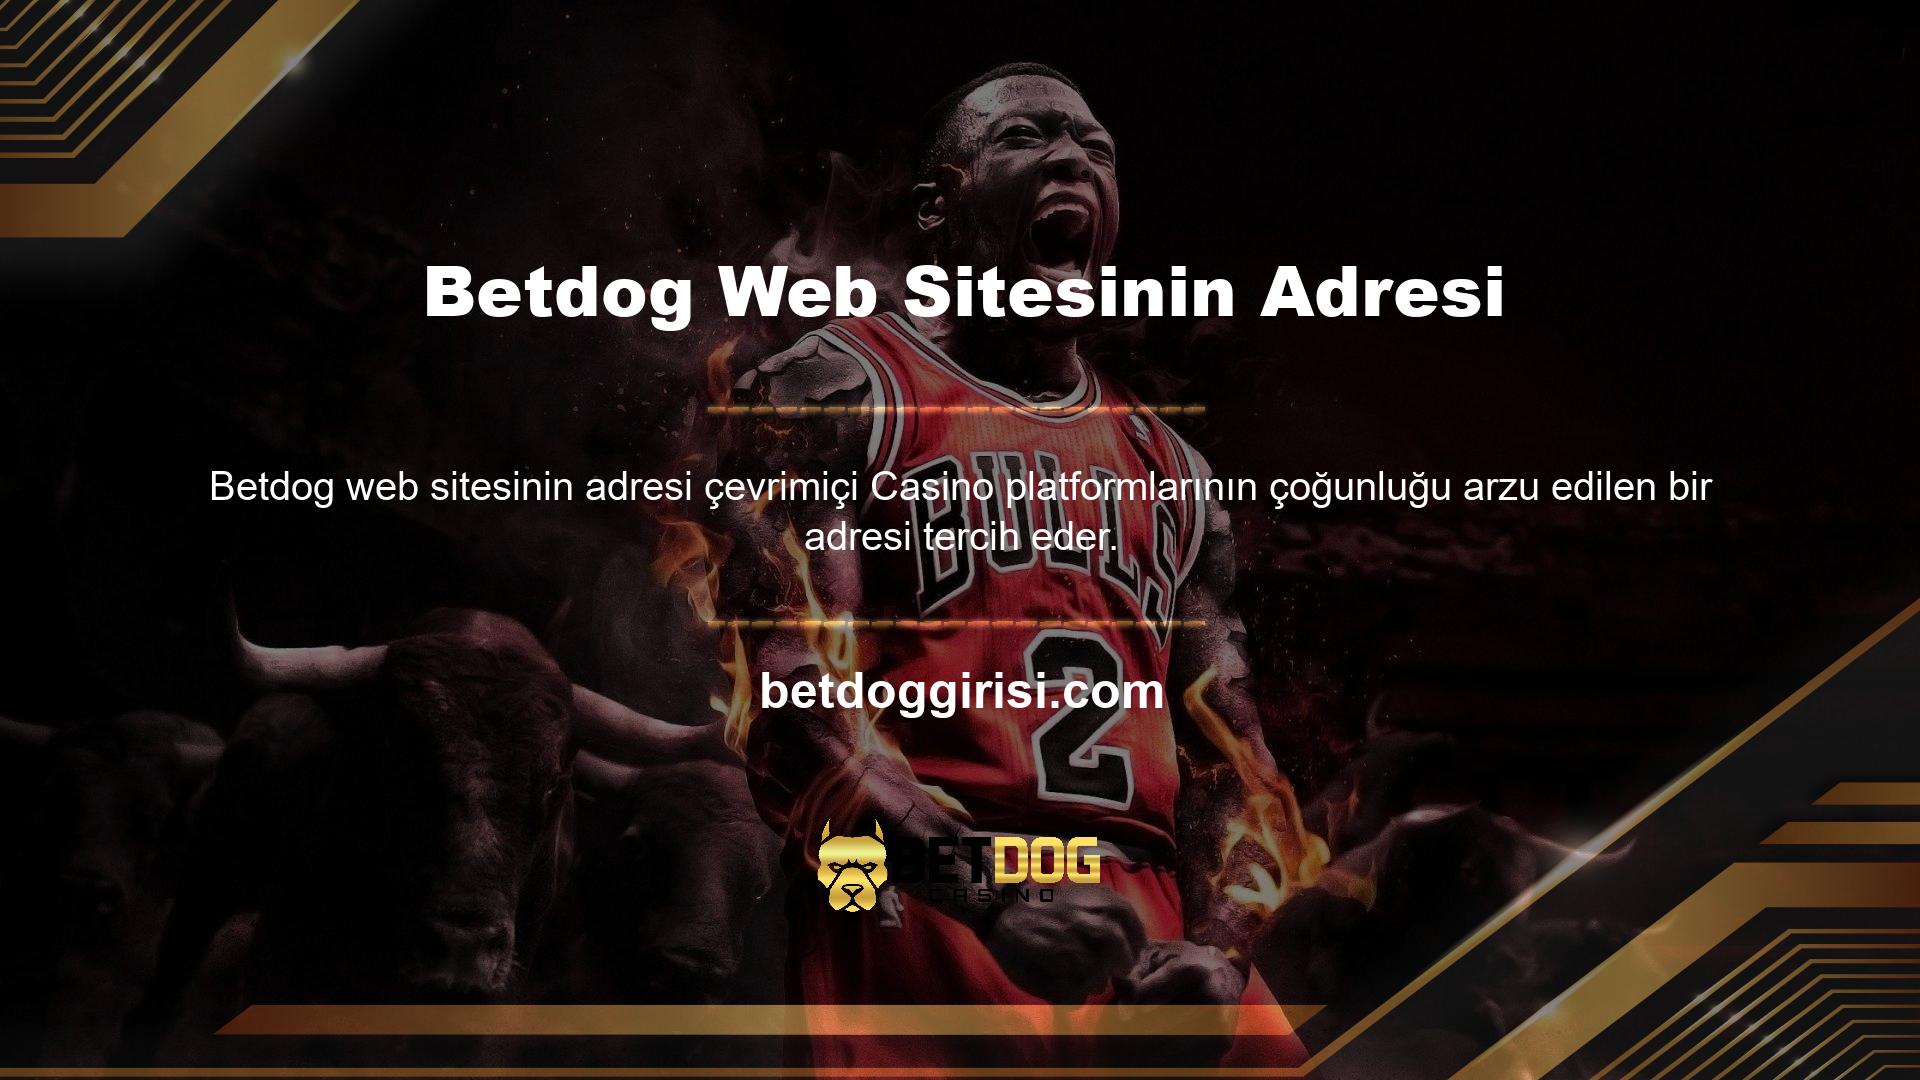 Betdog kullanan kullanıcılara hizmet sunan web sitelerinin adlarını ve adreslerini sağlayın